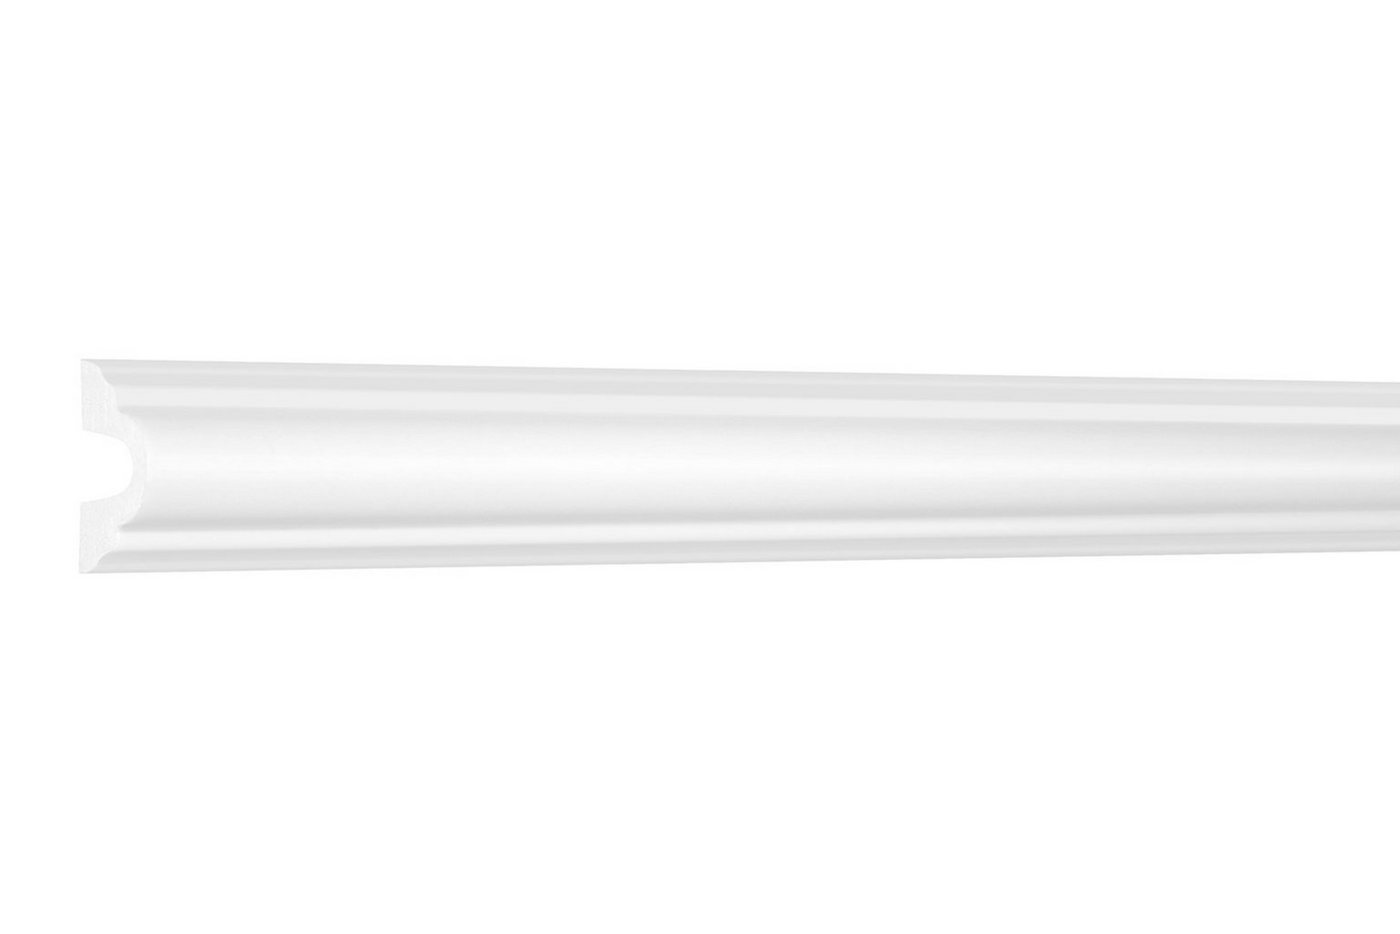 Hexim Stuckleiste HCR501, 10 Meter / 5 Leisten, Stuckleisten aus HDPS Styropor - extrem widerstandsfähig, schneeweiß & modern (10 Meter / 5 Leisten) Wandleiste Wandvertäfelung Wandprofil Friesleiste von Hexim